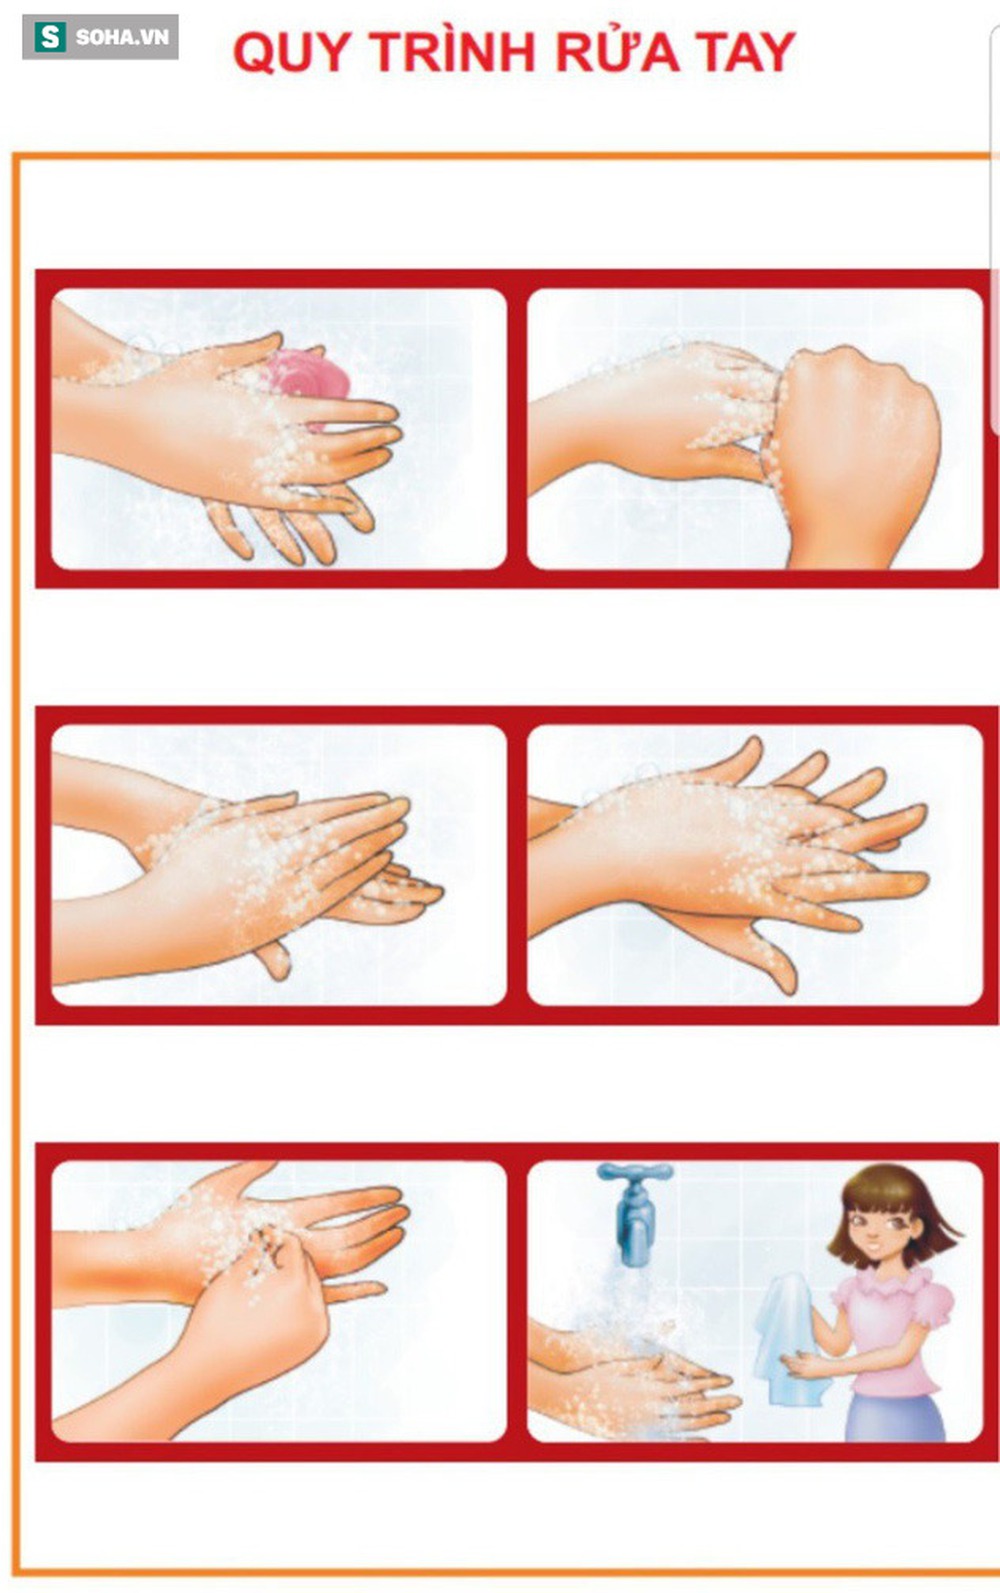 Nghiên cứu mới về số lần rửa tay có thể giúp phòng bệnh: Bạn nên áp dụng cho cả gia đình - Ảnh 1.